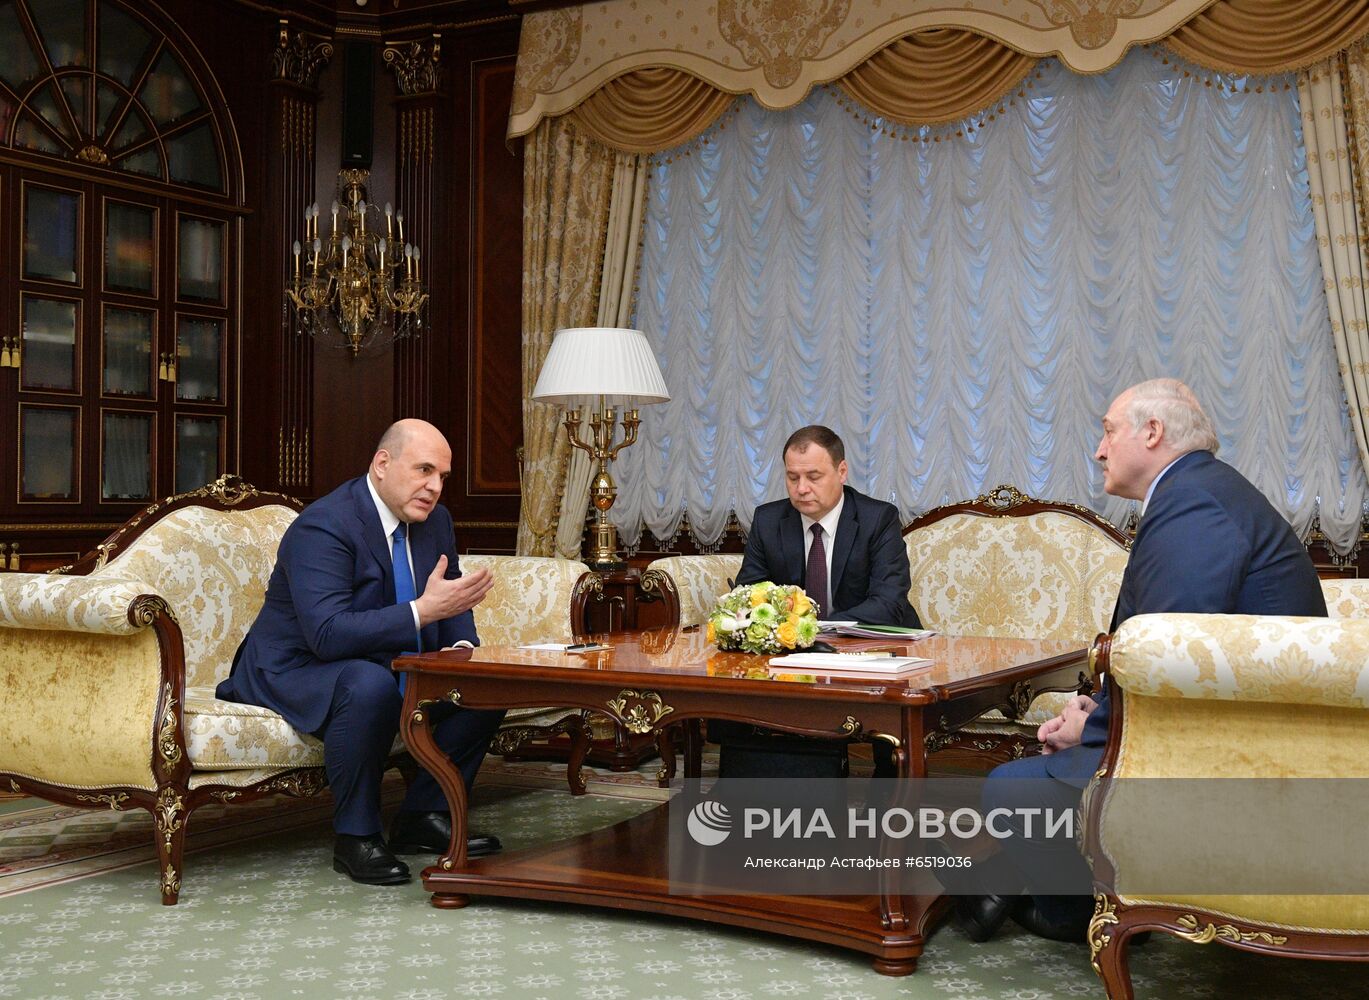 Визит премьер-министра РФ М. Мишустина в Минск